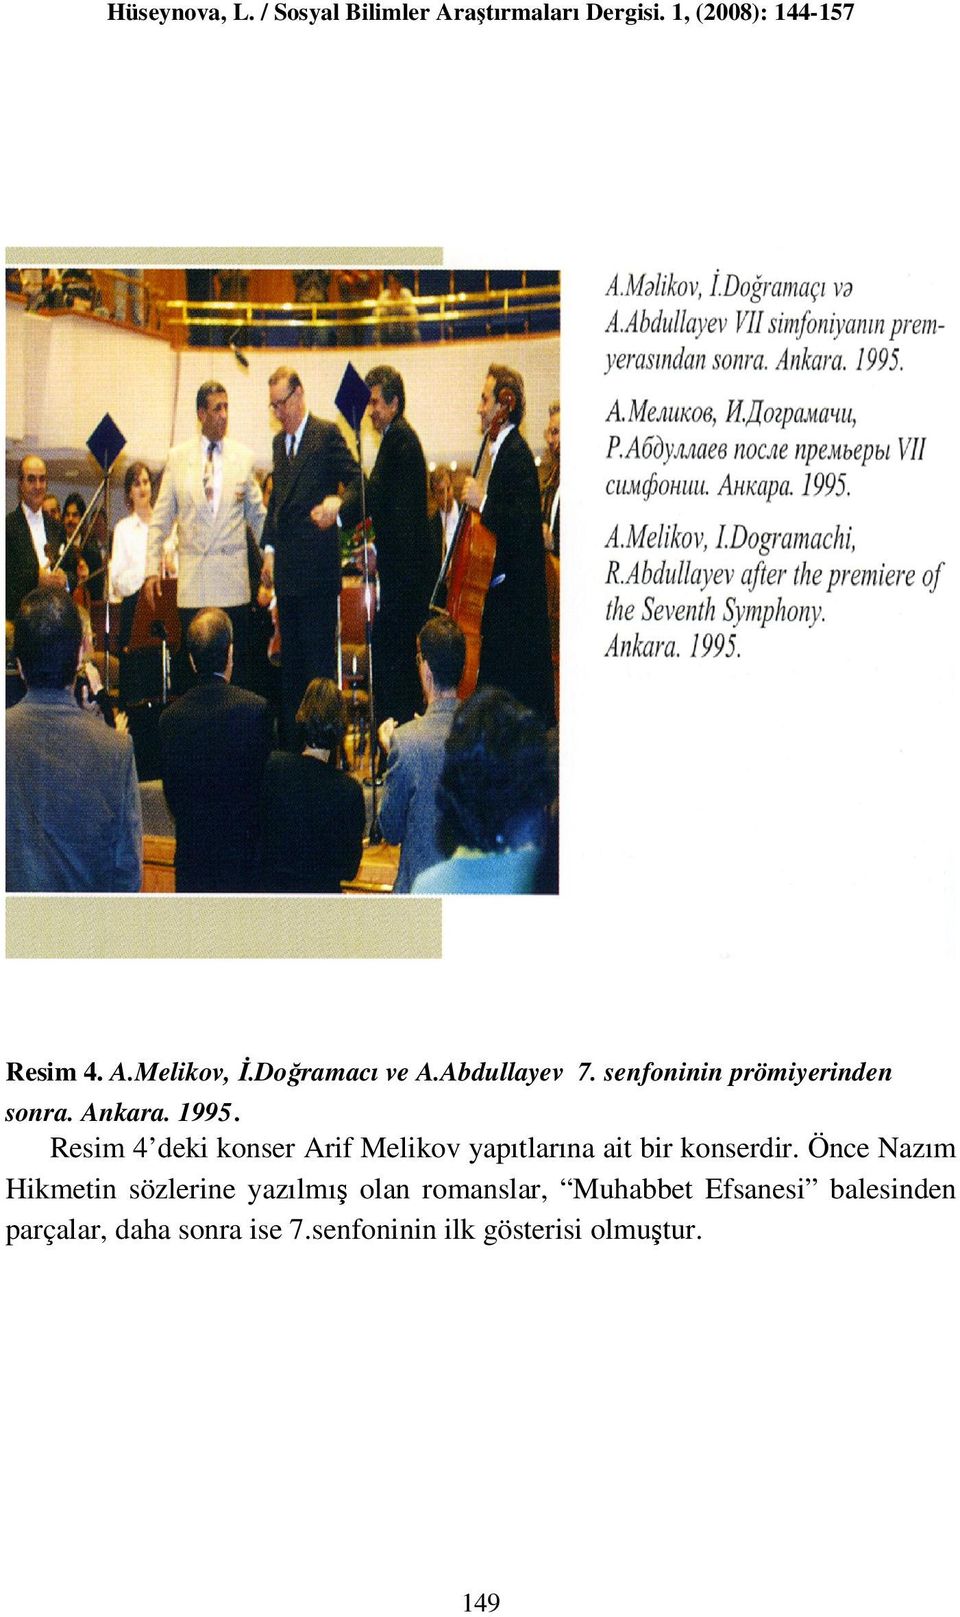 Resim 4 deki konser Arif Melikov yapıtlarına ait bir konserdir.